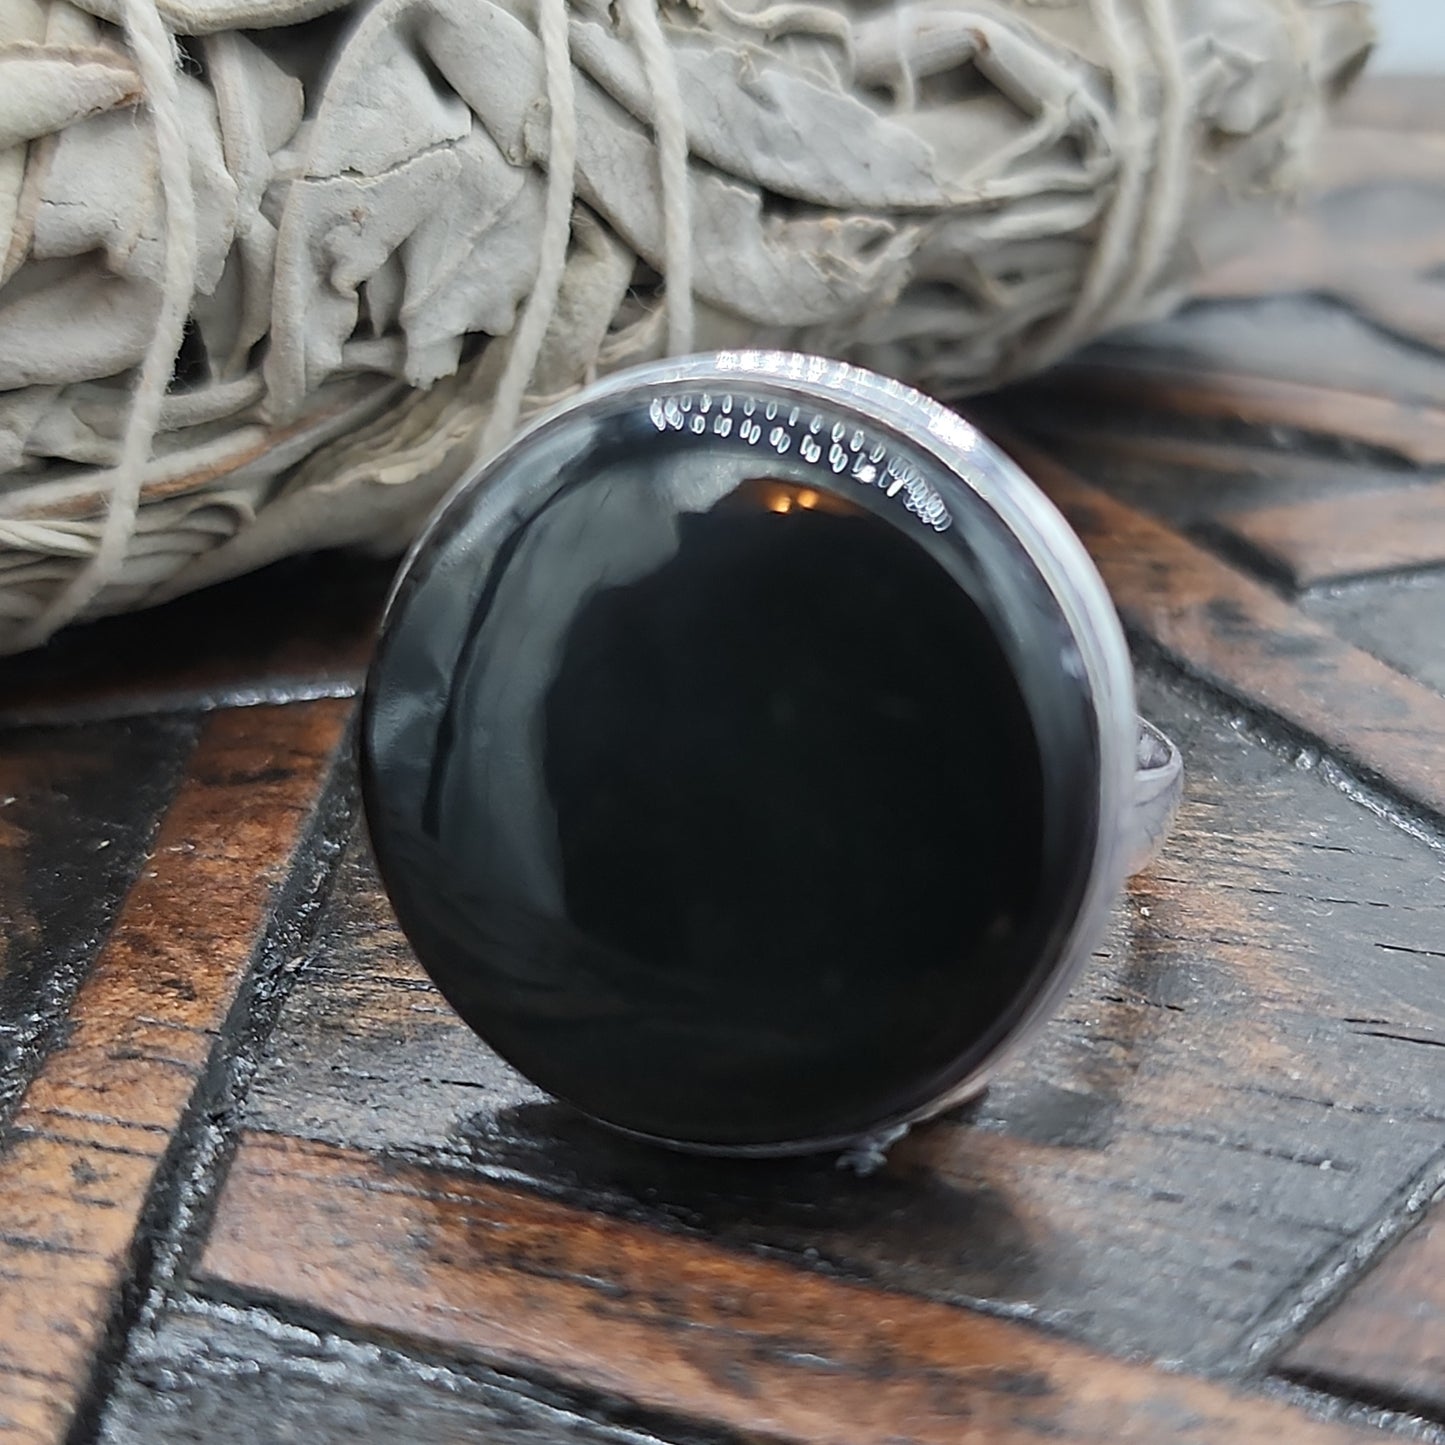 Obsidian Ring